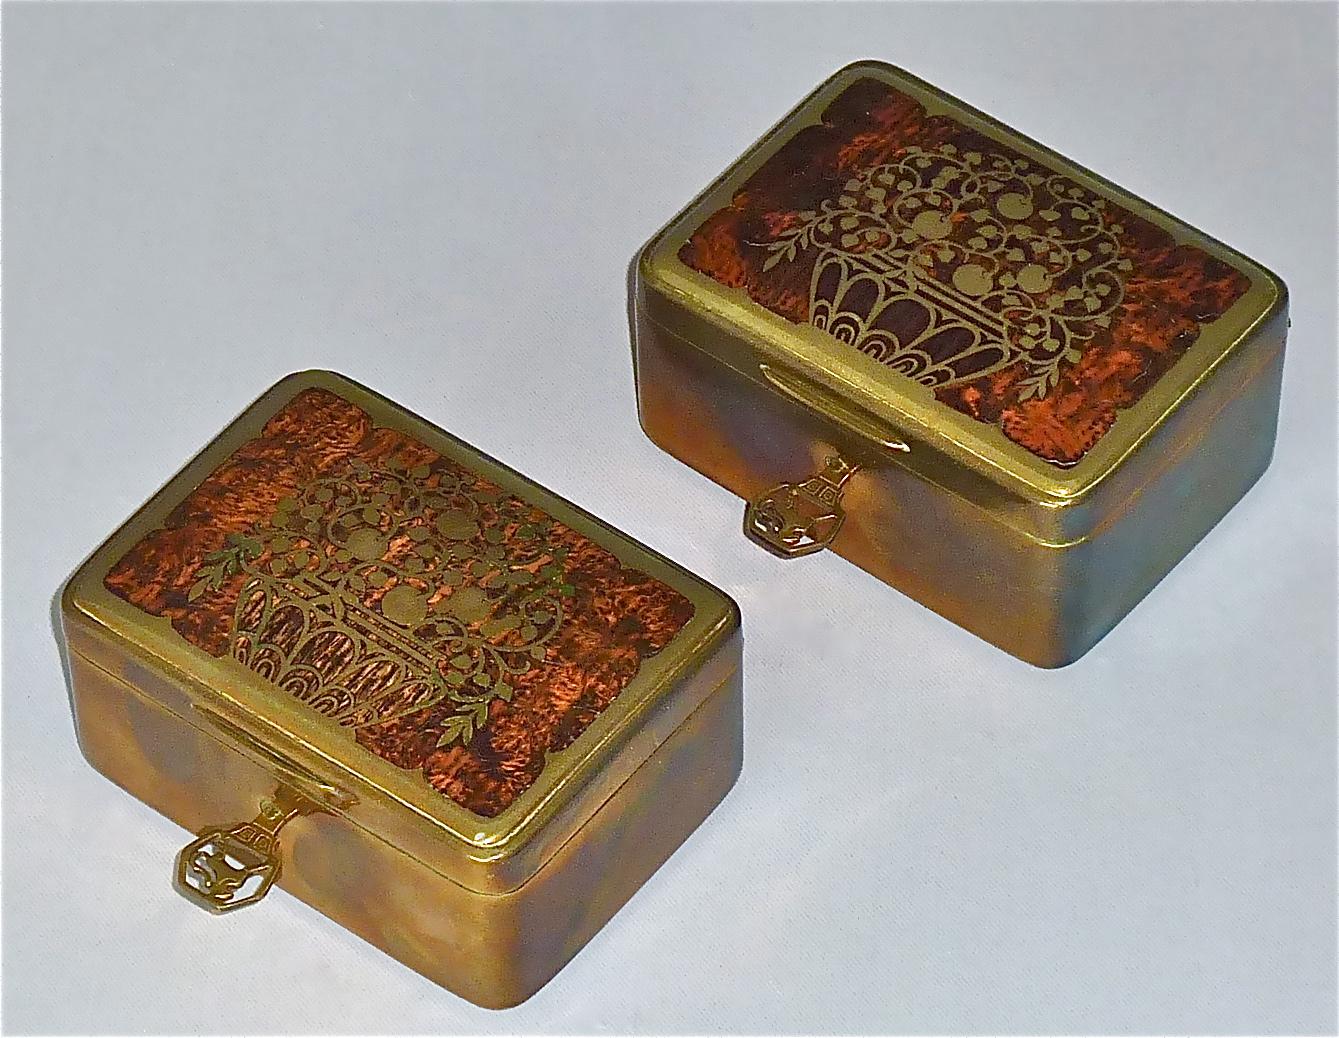 Jugendstil Pair Signed Erhard Sohne Trinket Casket Box Casket Original Keys Brass Wood 1900 For Sale